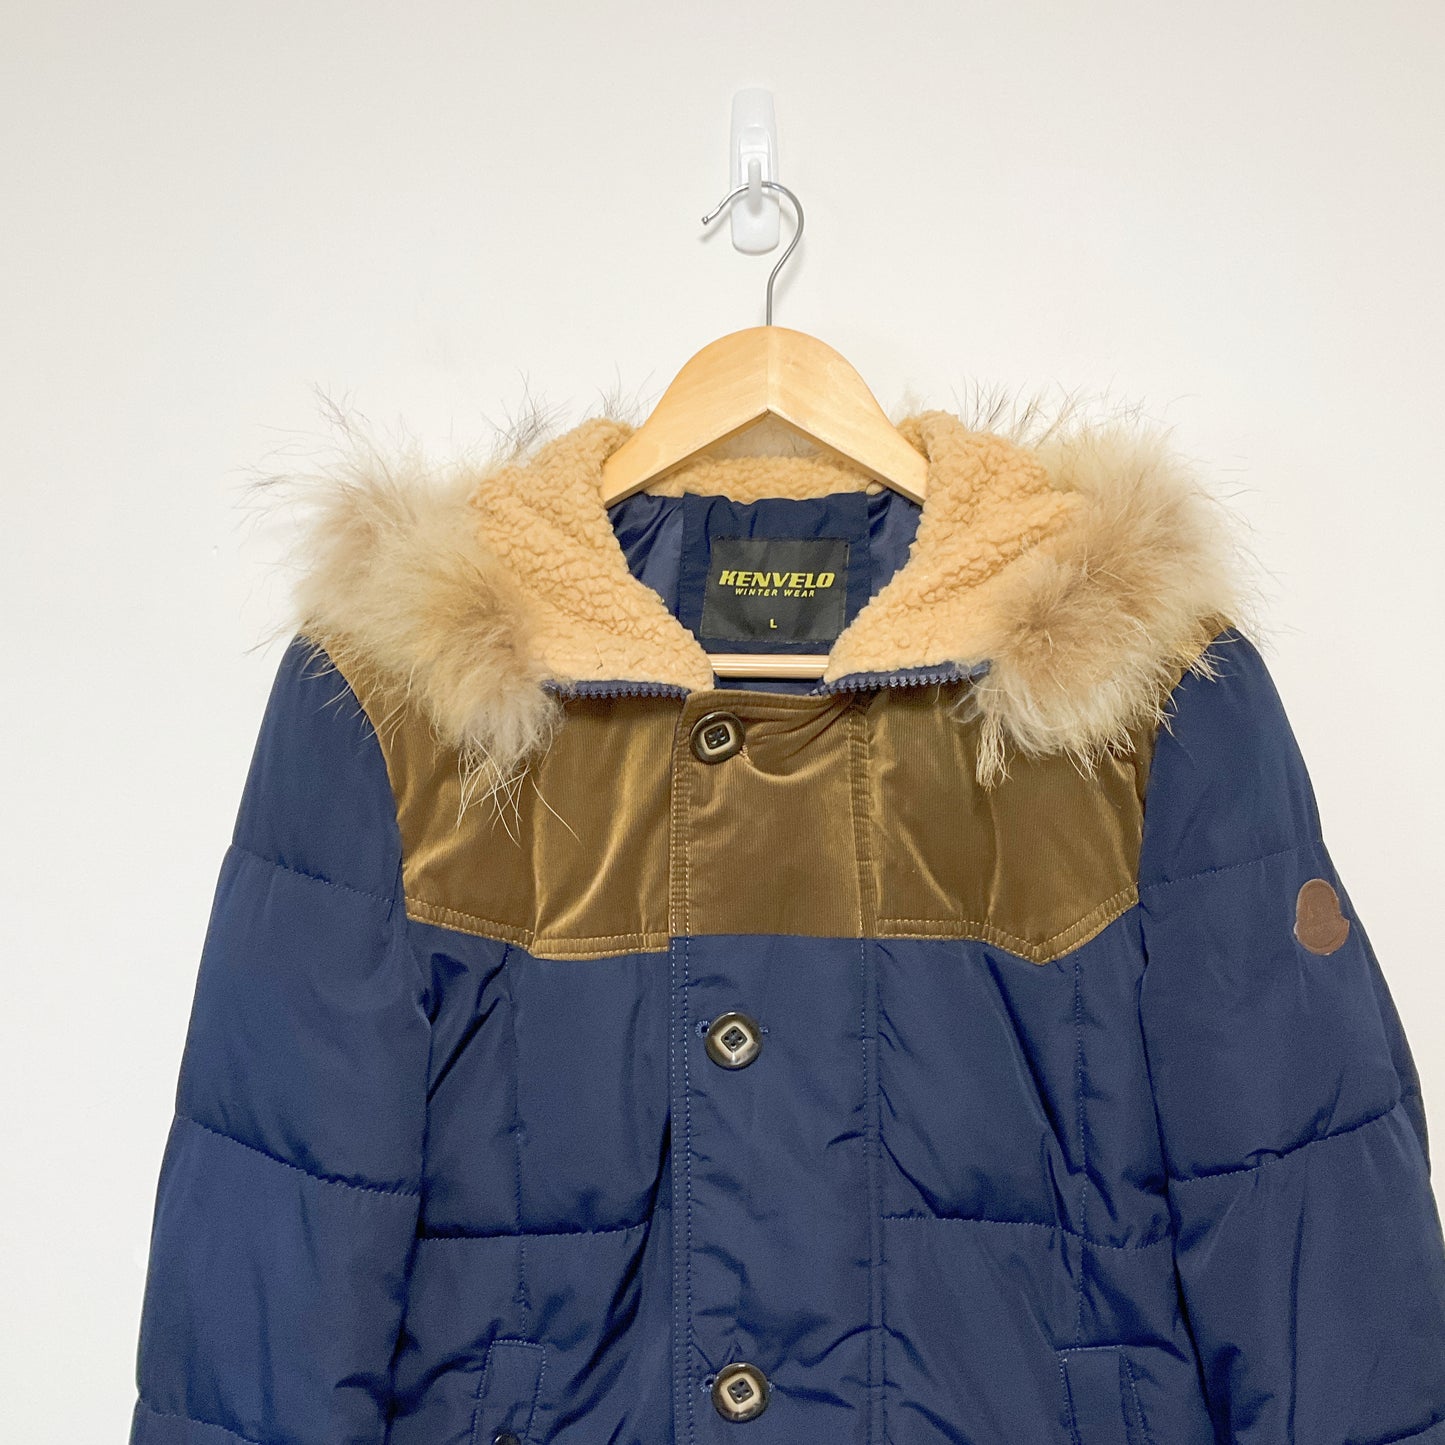 Kenvelo - Winter Wear Puffer Jacket